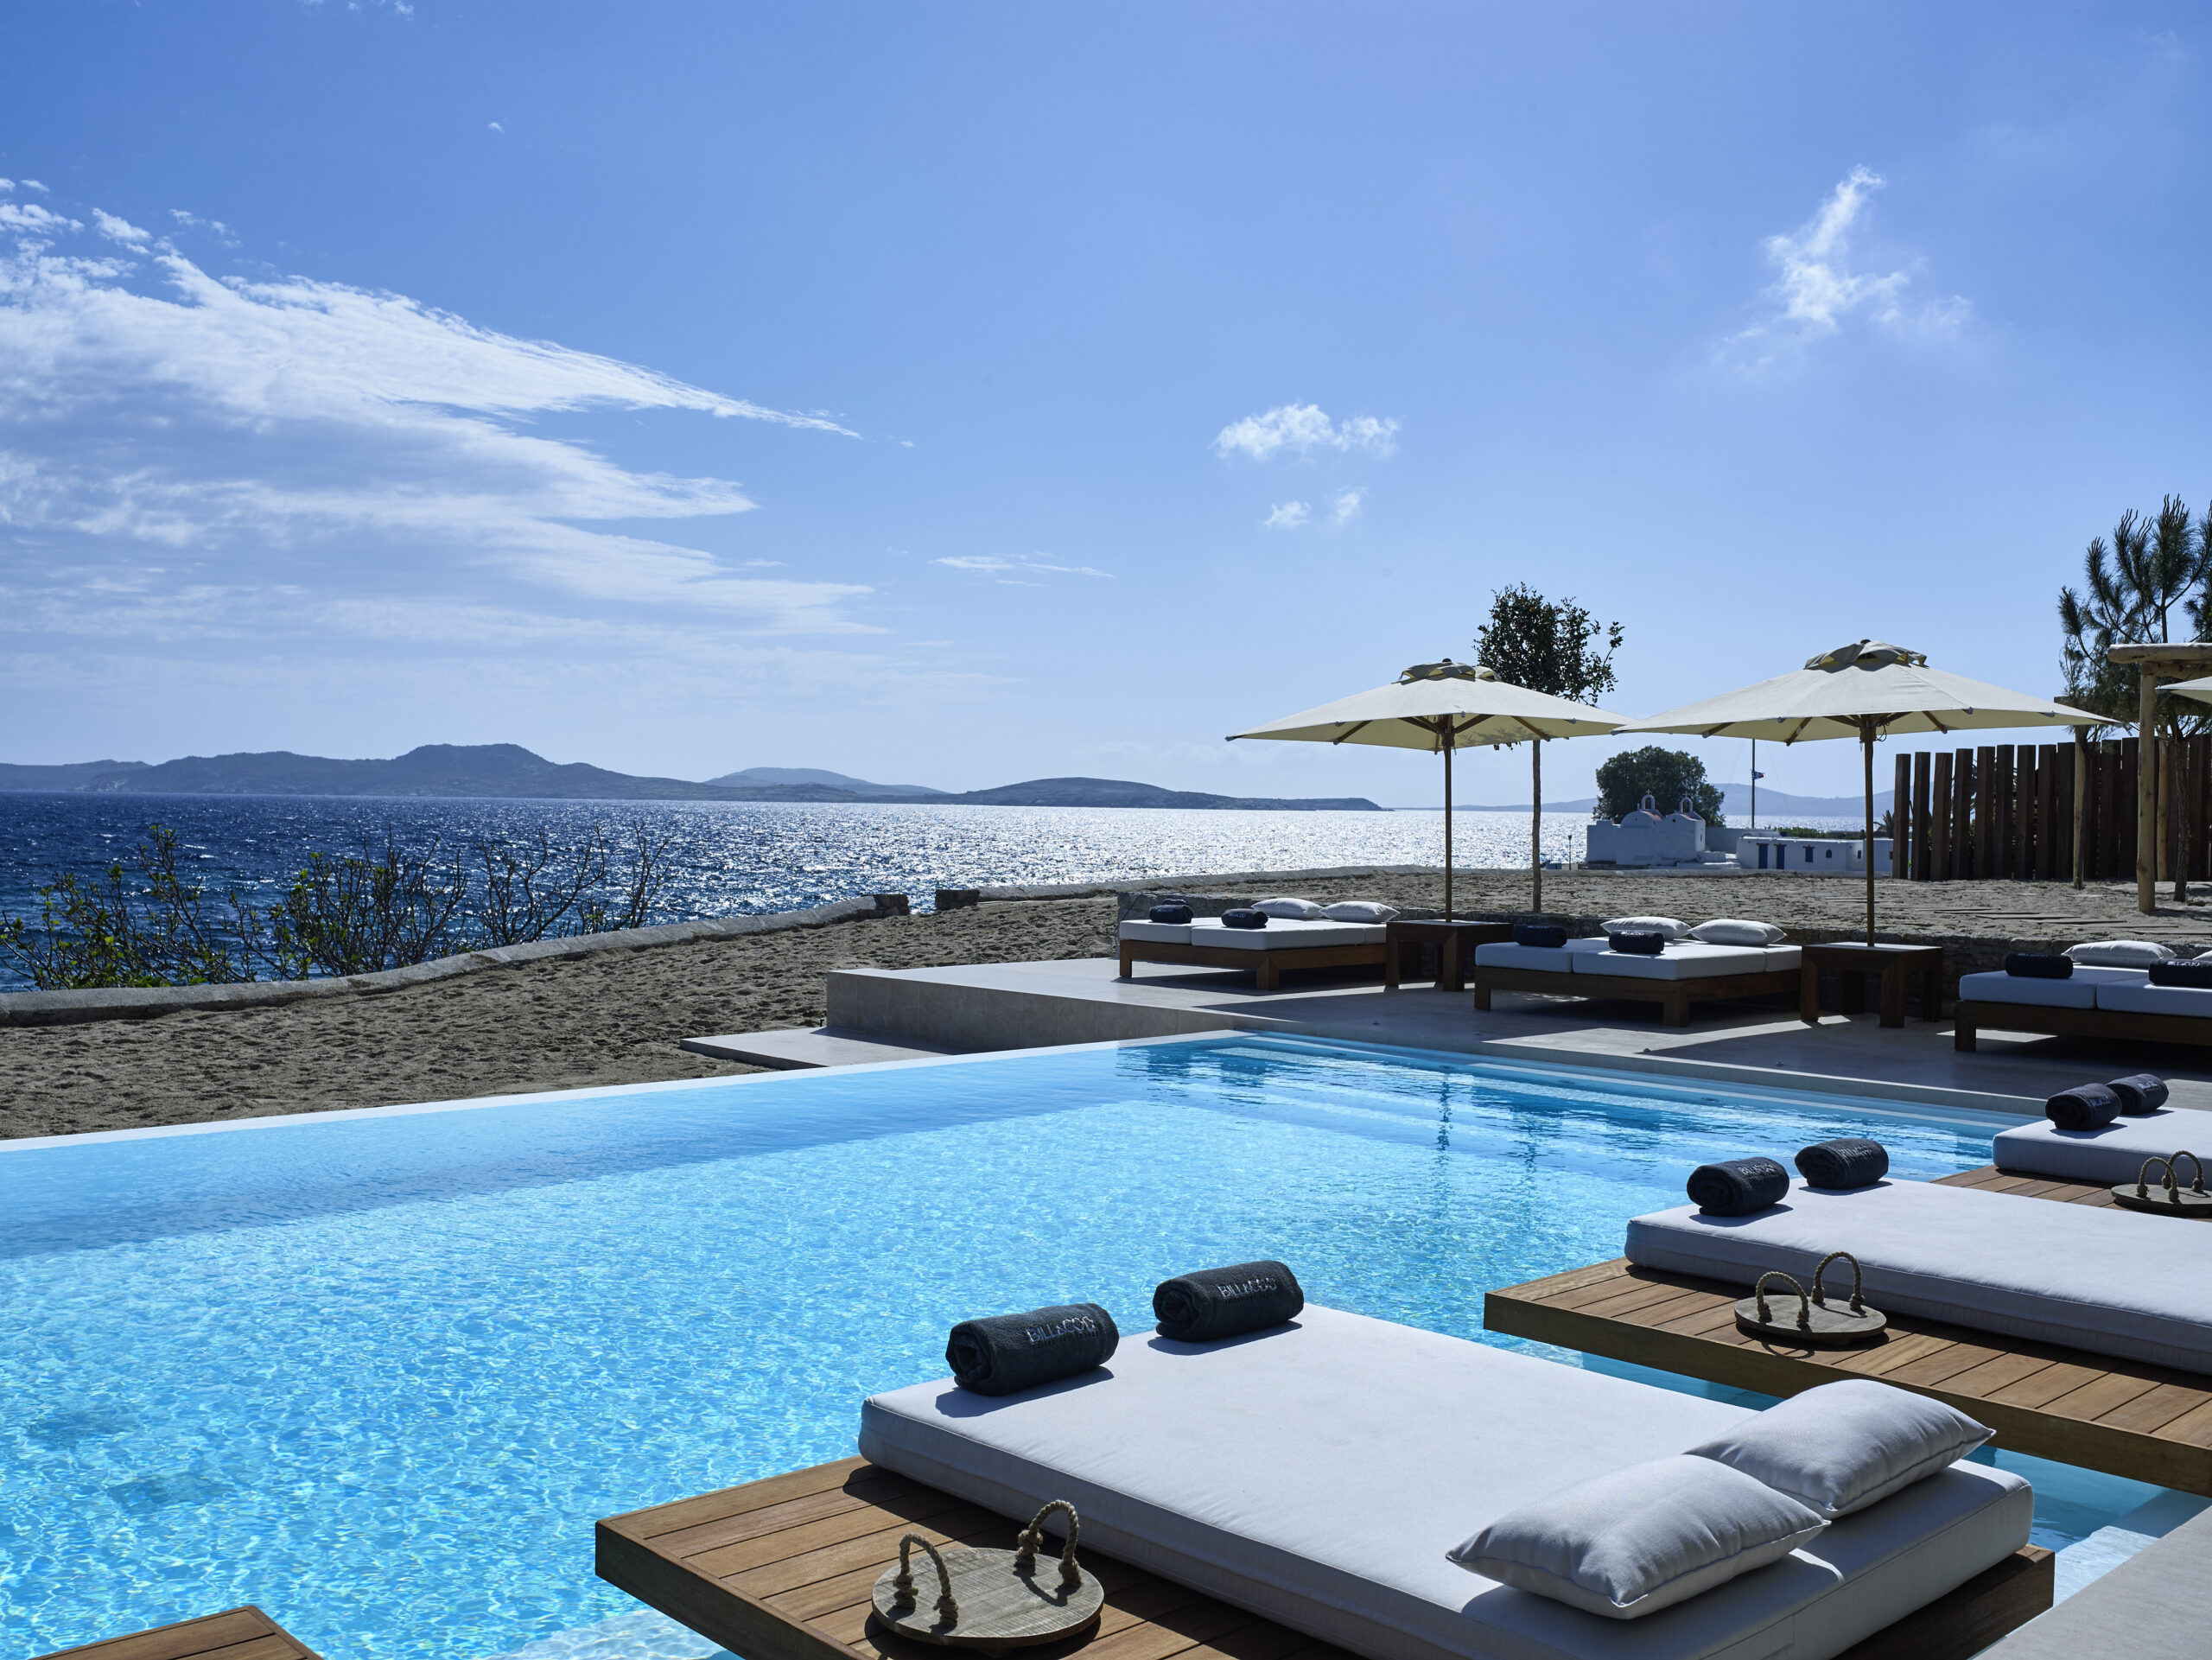 Une piscine entourée de transats et de sunbeds, au bord de la mer Egée, à l'hôtel Bill & Coo où se trouve l'une des plus belles piscines de Mykonos